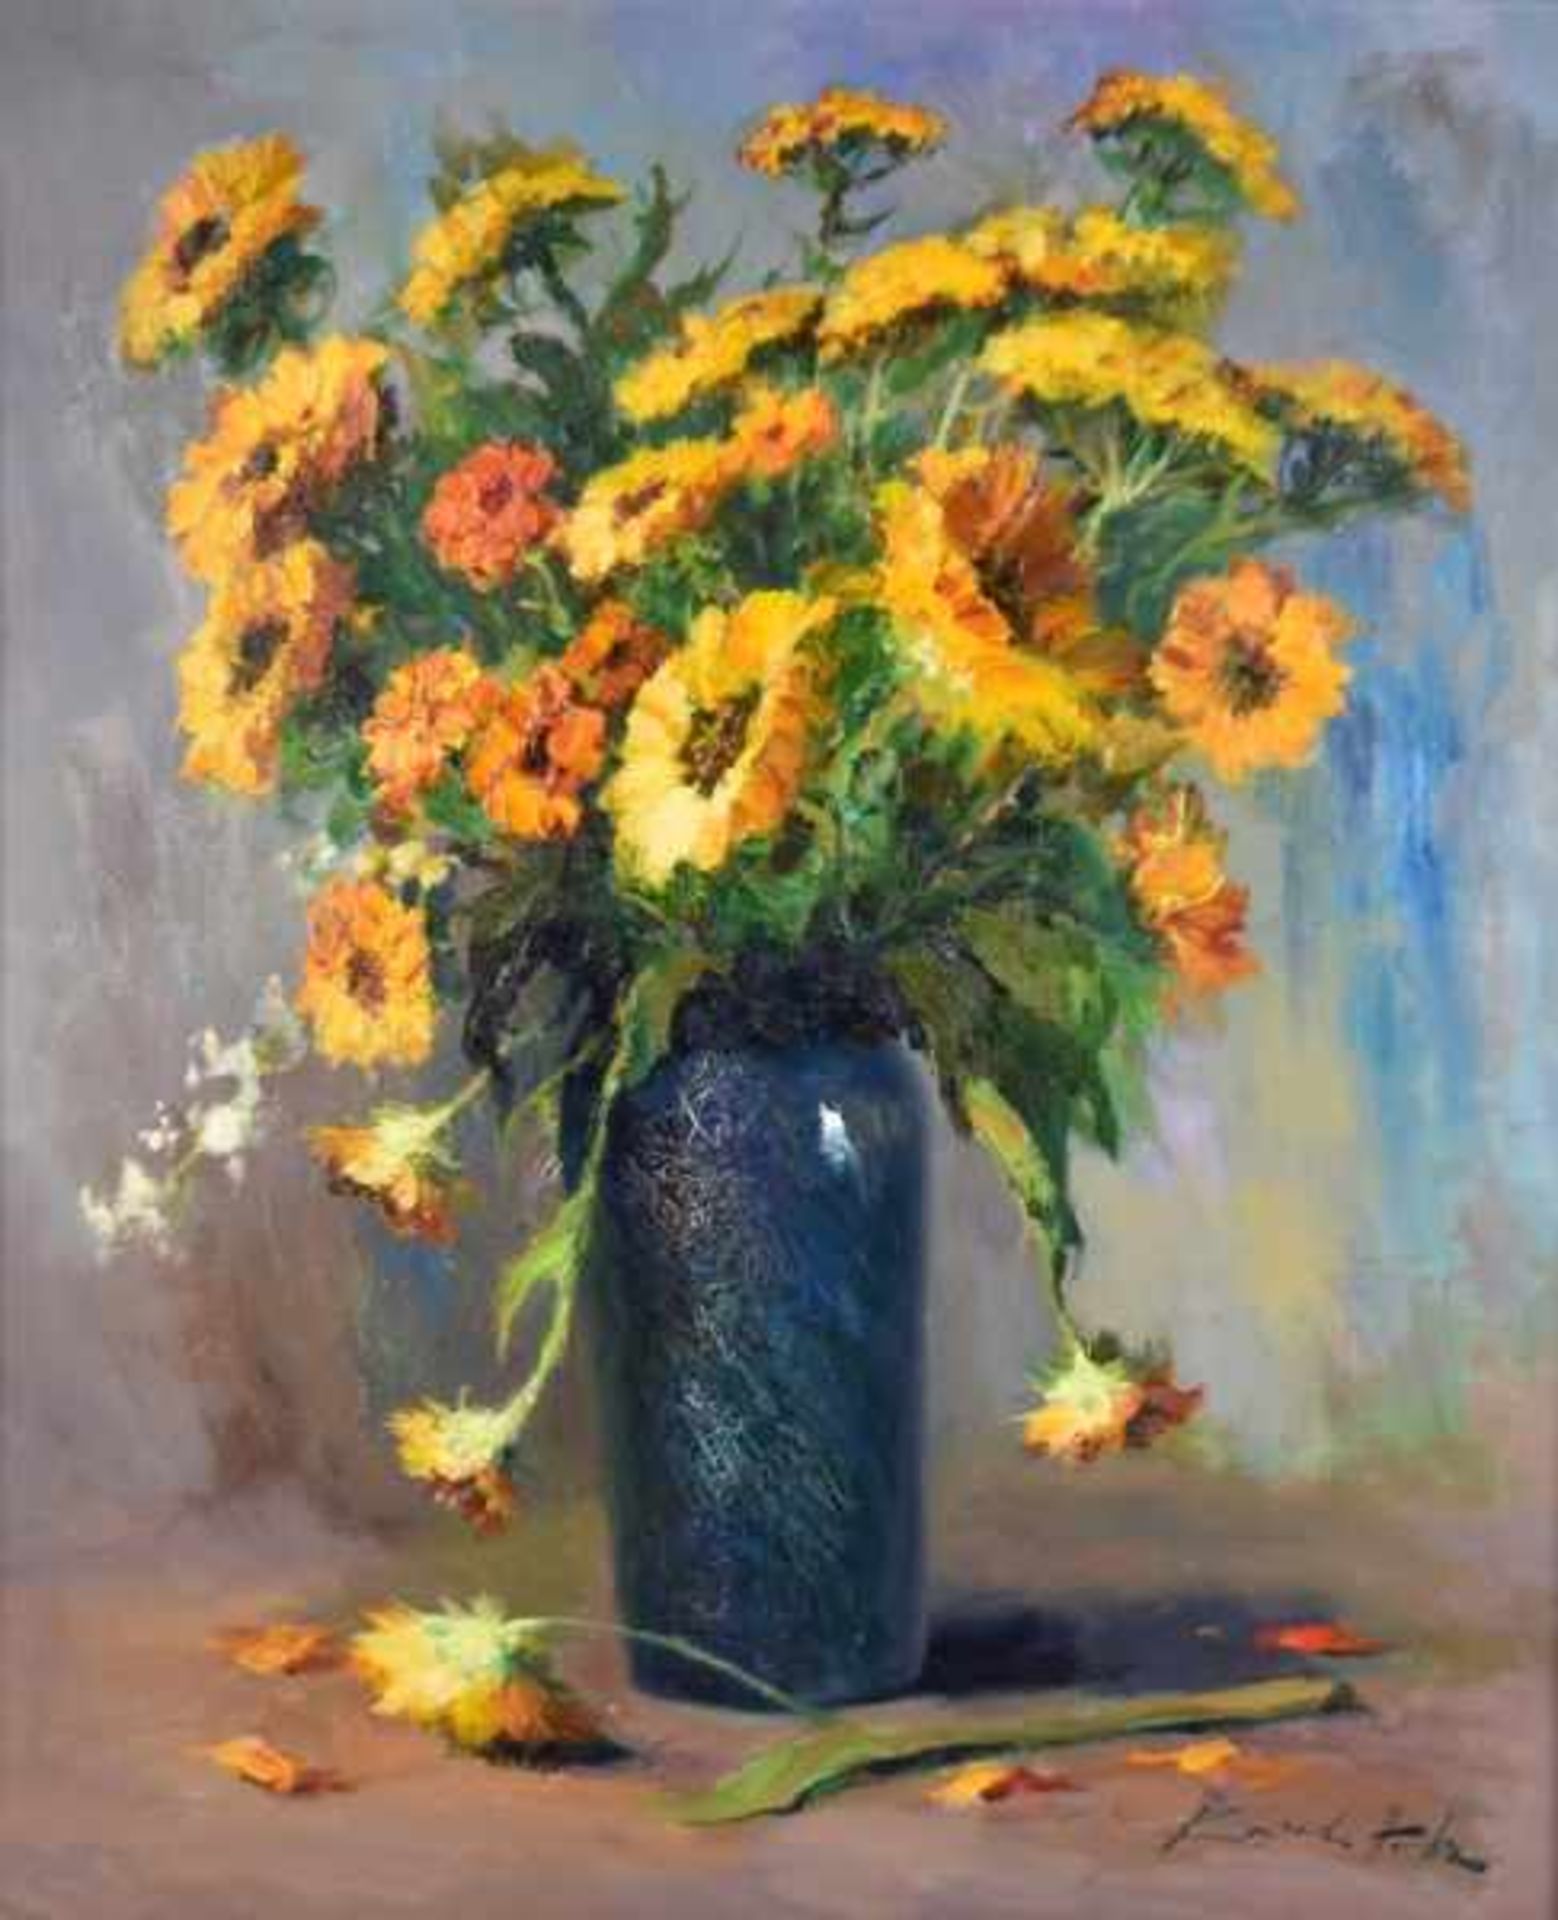 HODR Karel (1910 Prag - 2002 Konstanz) "Gelbe Gerbera", eindrucksvolles Blumenstillleben mit einem